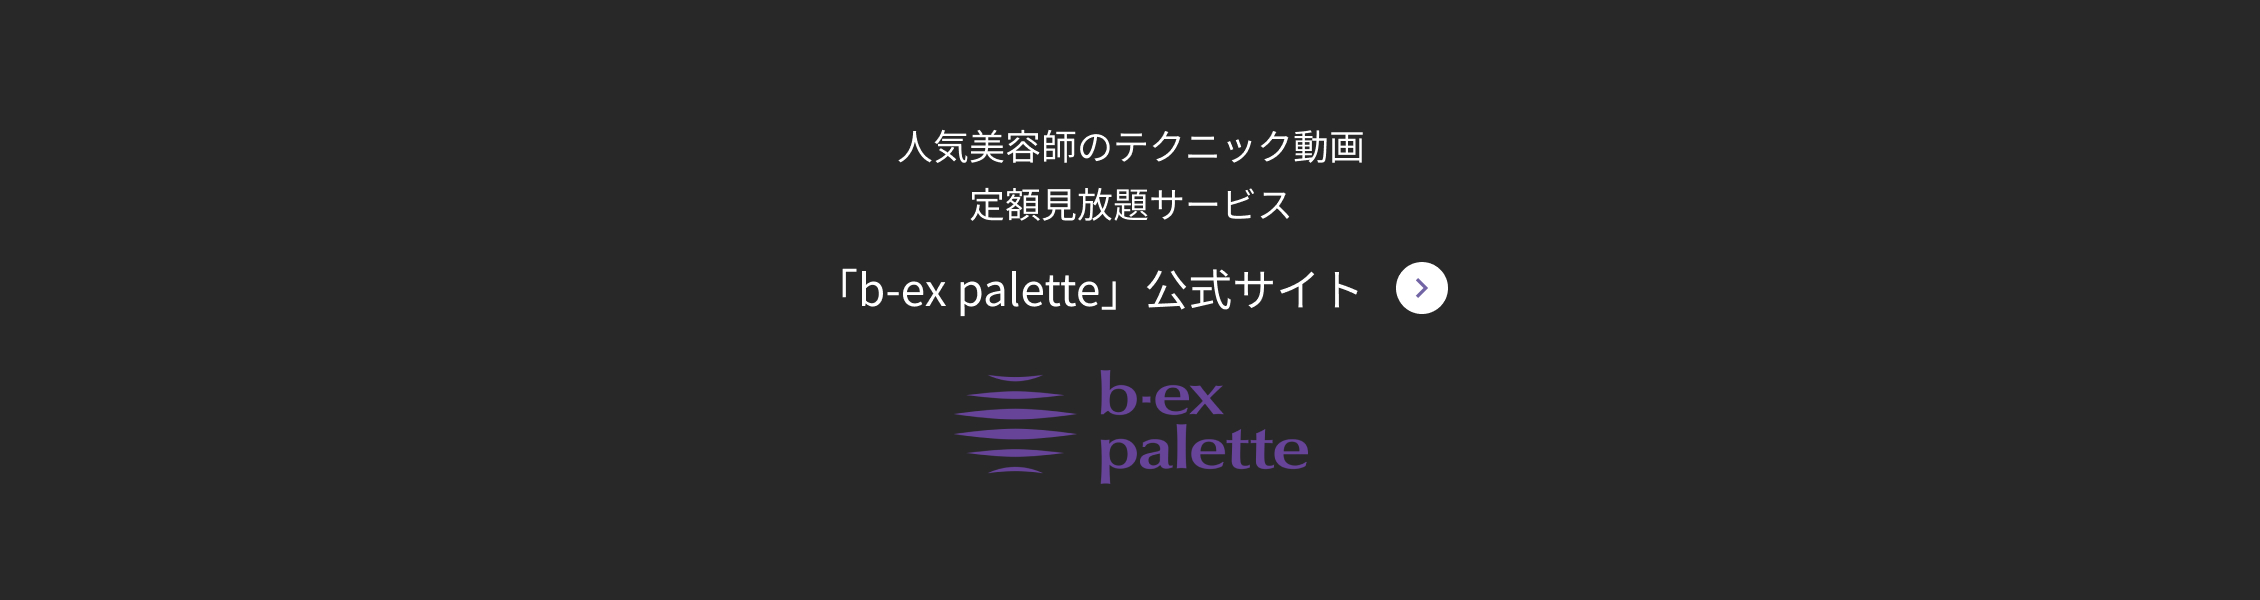 人気美容師のテクニック動画 定額見放題サービス 「b-ex palette」公式サイト